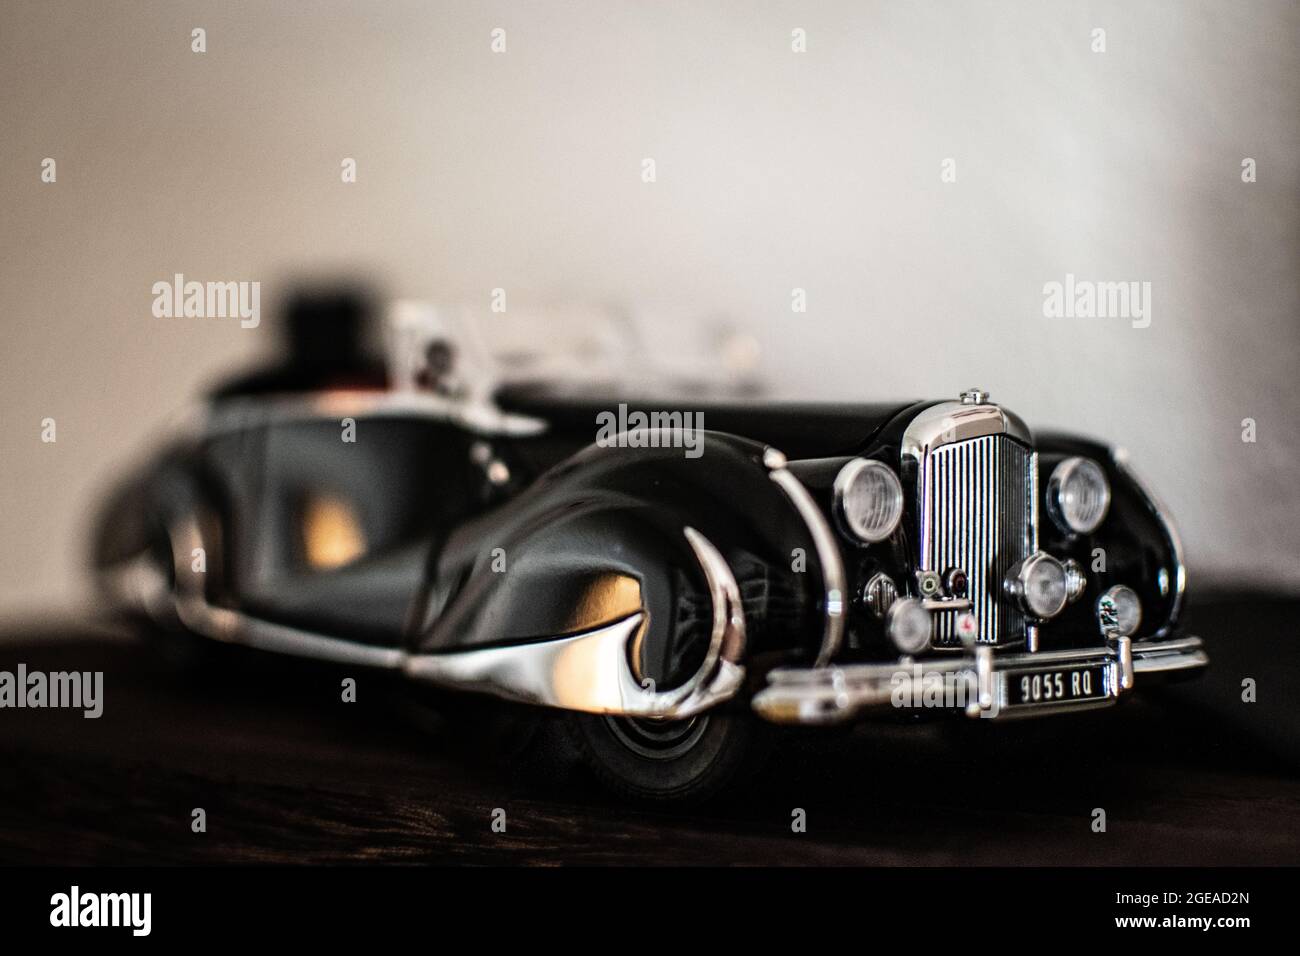 A decorative model of a classic car, a black 1947 Bentley. Stock Photo